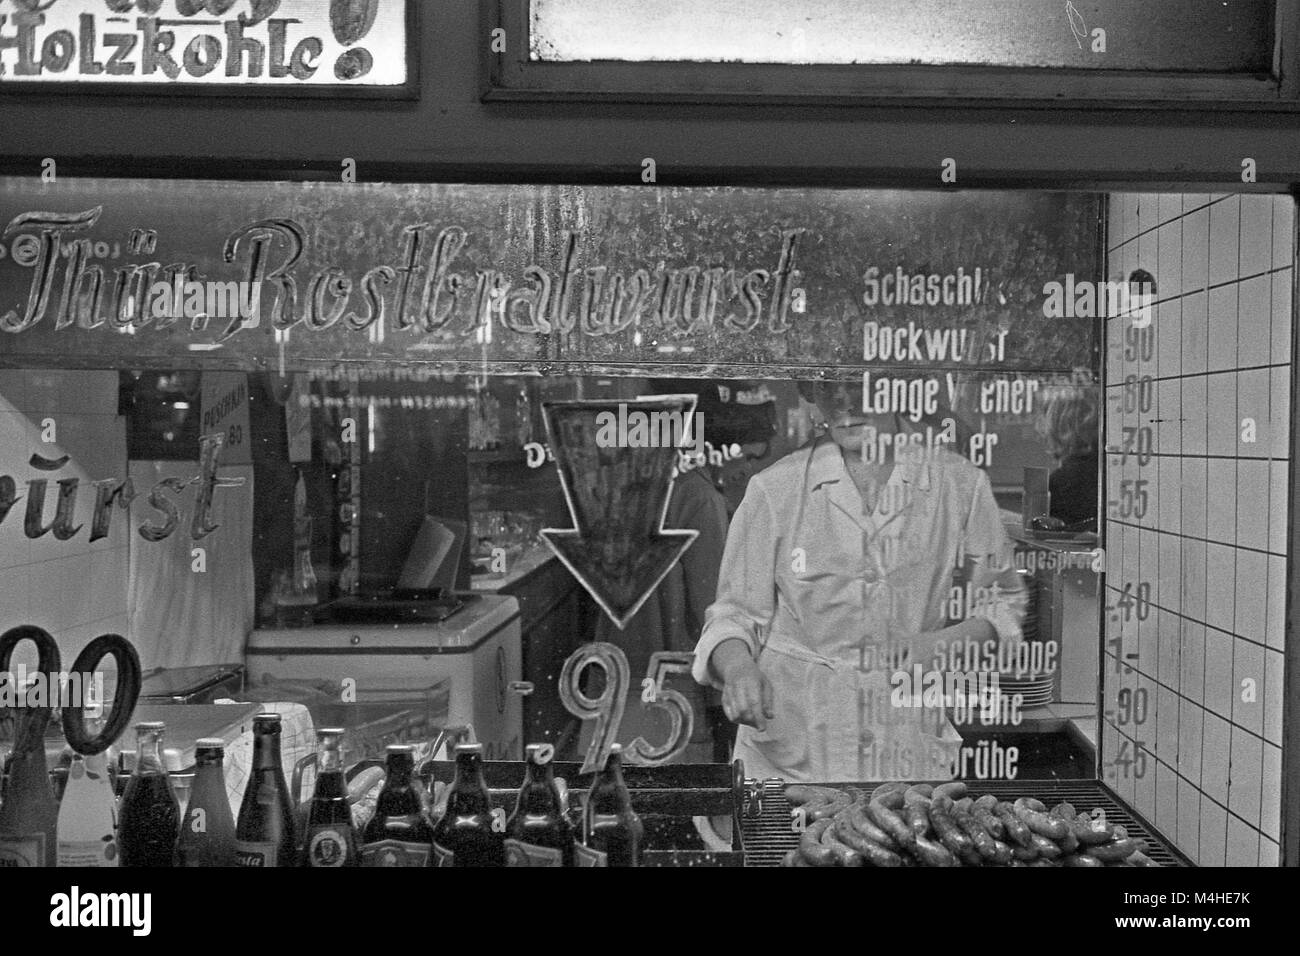 Eine Bratwurst stand mit Menü und Preise auf dem Fenster auf dem  Kurfürstendamm in Berlin geschrieben Stockfotografie - Alamy